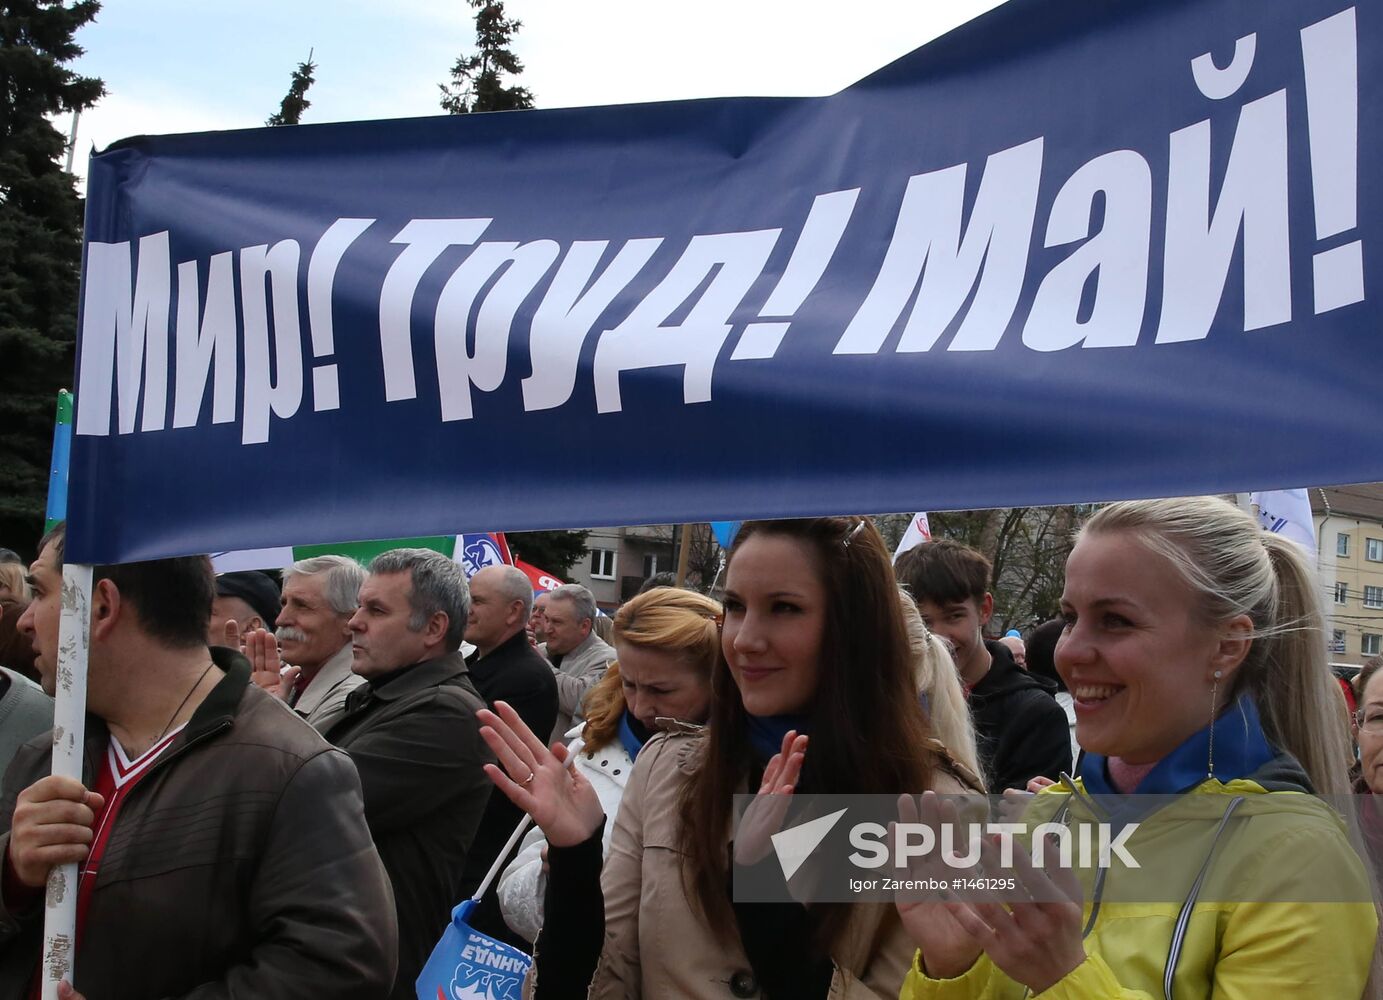 May Day demonstration in Kaliningrad